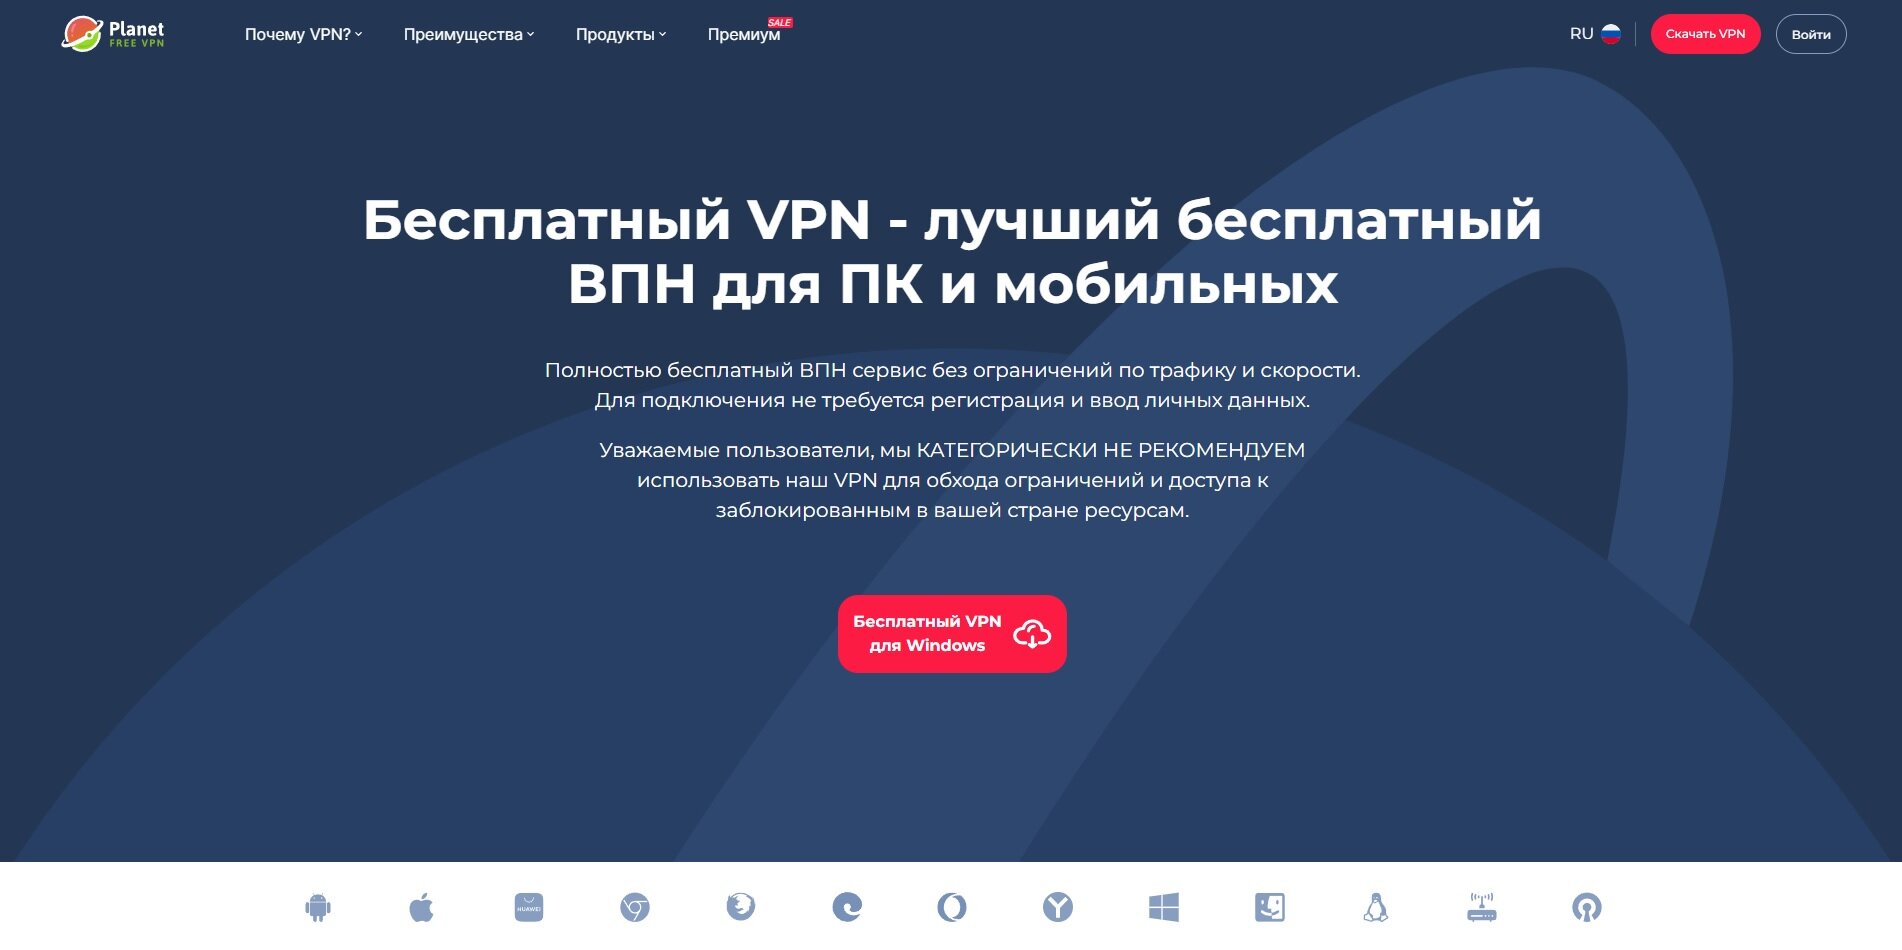 Freevpnplanet.com – Обзор и отзывы о VPN-сервисе